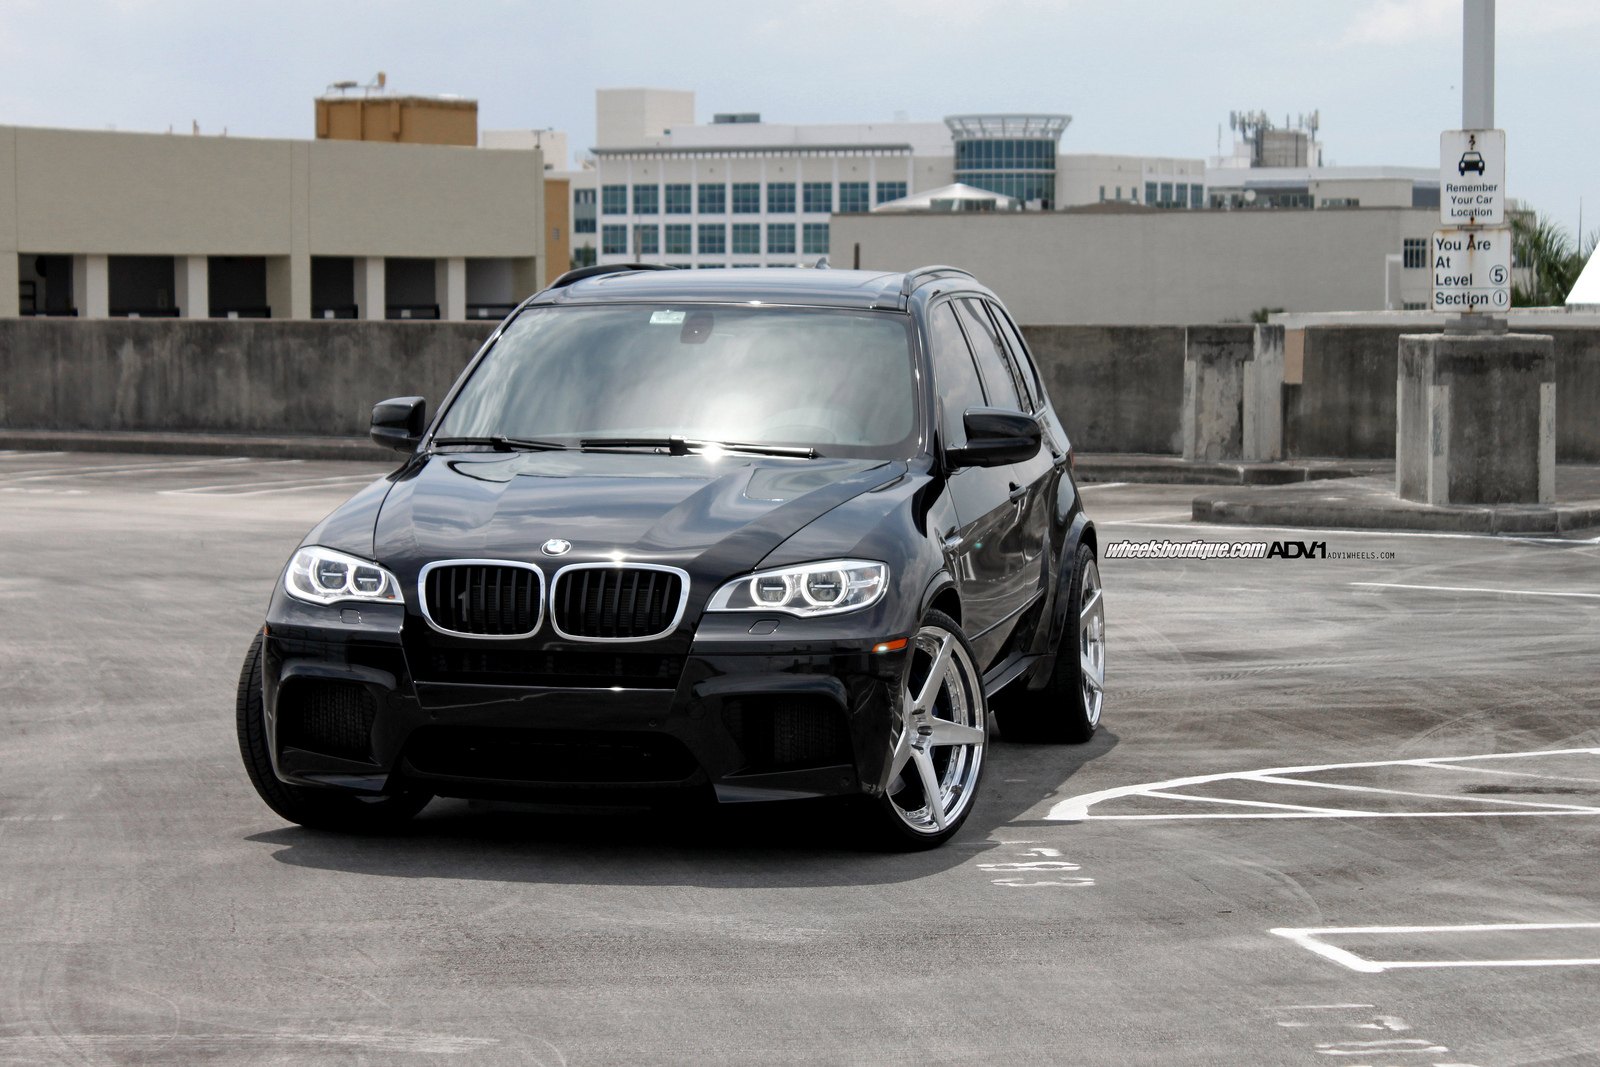 Bmw x5 черный. БМВ м5 е70. BMW x5m 2013. BMW x5 Black. BMW x5m 2013 черный.